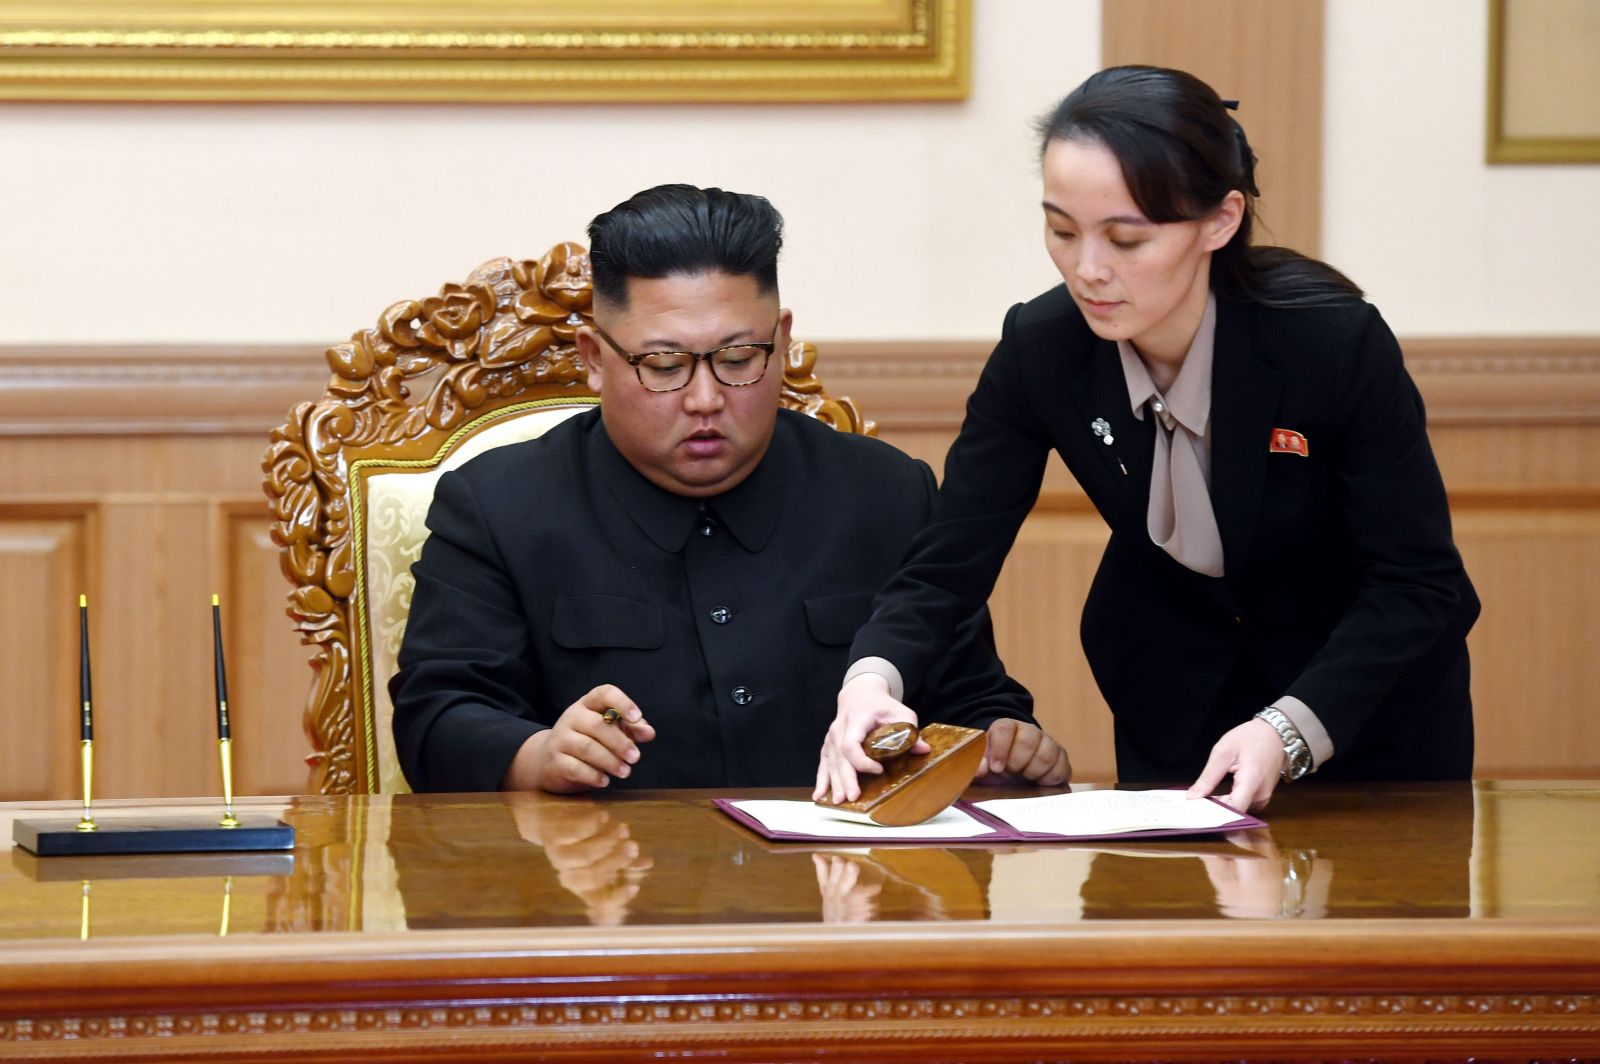 Trump posielal svoju radkyňu, aby zviedla Kim Čong-una. Urob to pre tím, smial sa, keď na ňu diktátor žmurkol